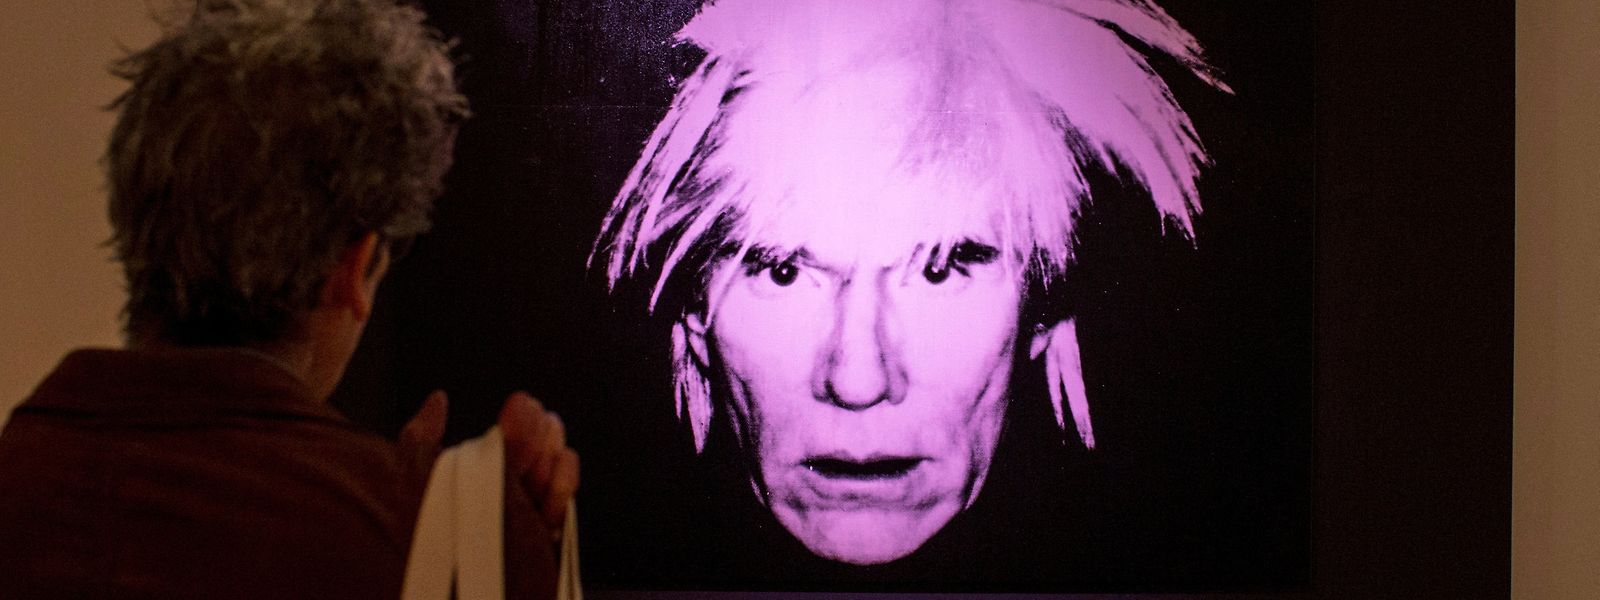 Andy Warhol, hier im Selbstporträt, hat ein Foto des Musikers Prince als Vorlage für eine Porträtserie genommen. Das verletzte das Urheberrecht der Fotografin. 